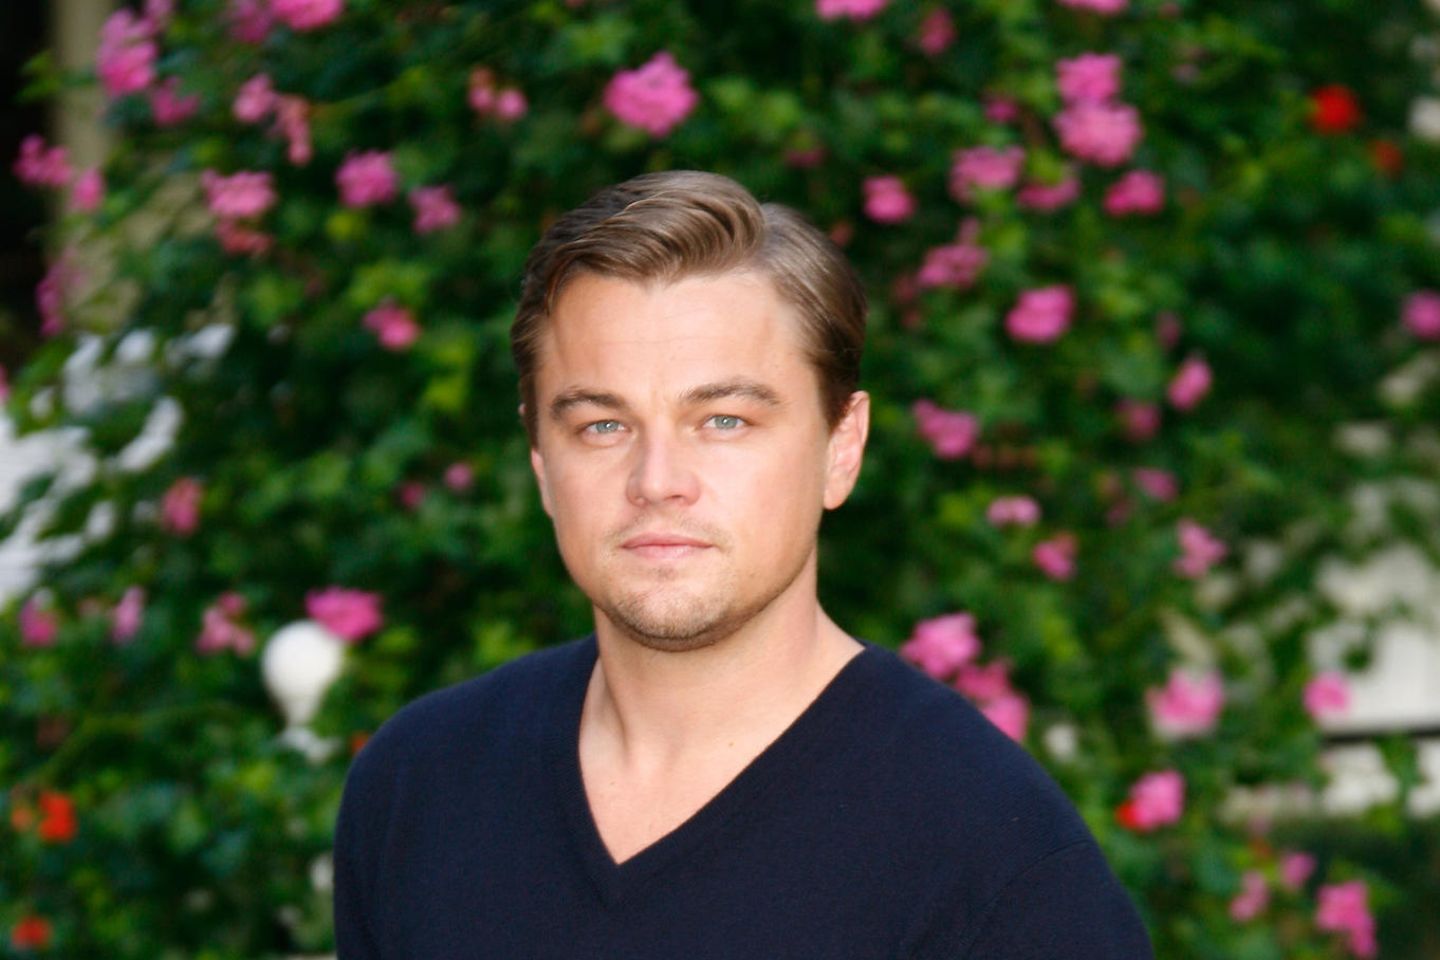 Leonardo DiCaprio: Leonardo DiCaprio